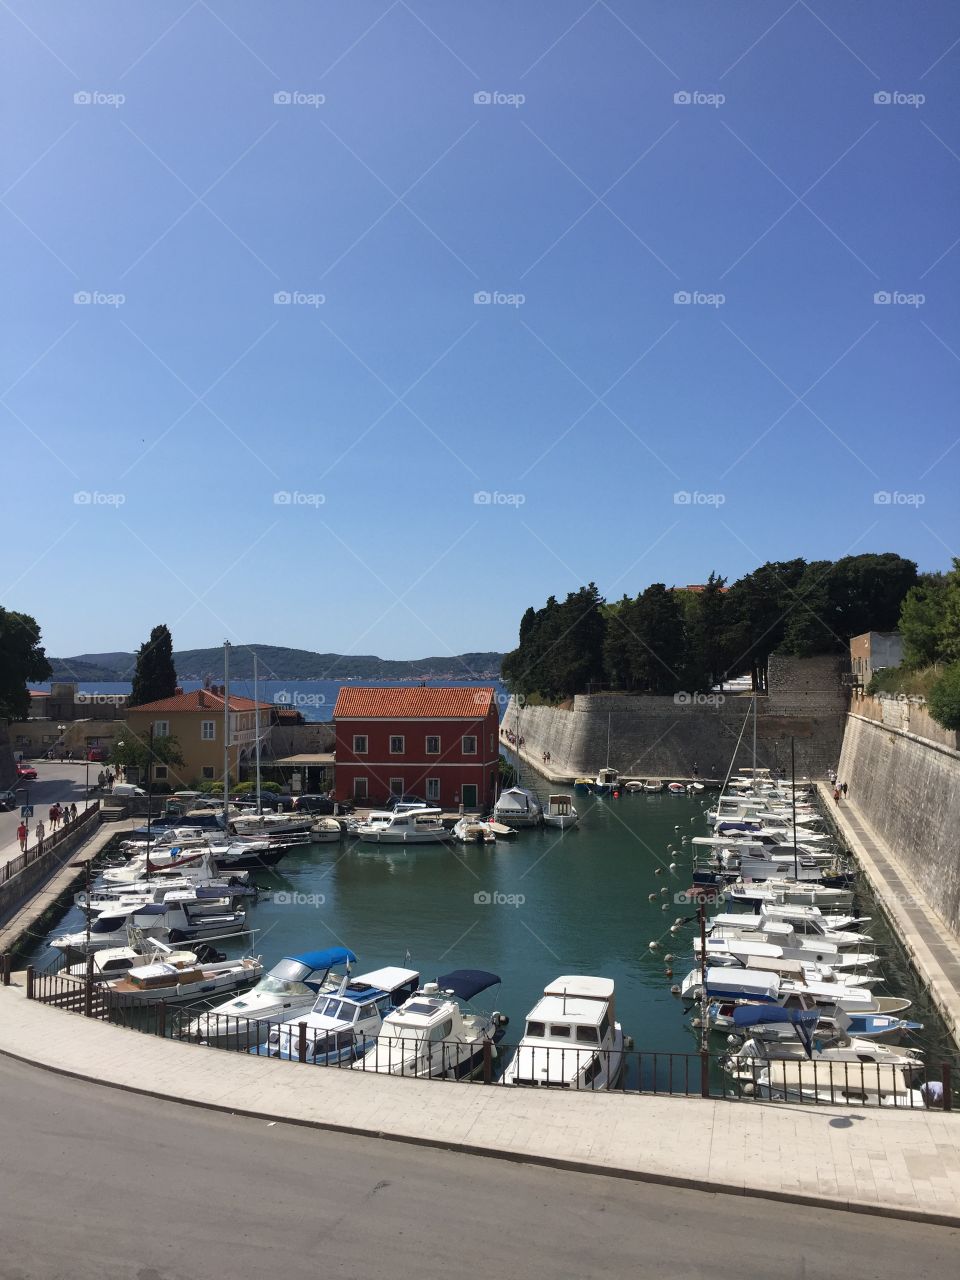 Fosa, small harbour in Zadar